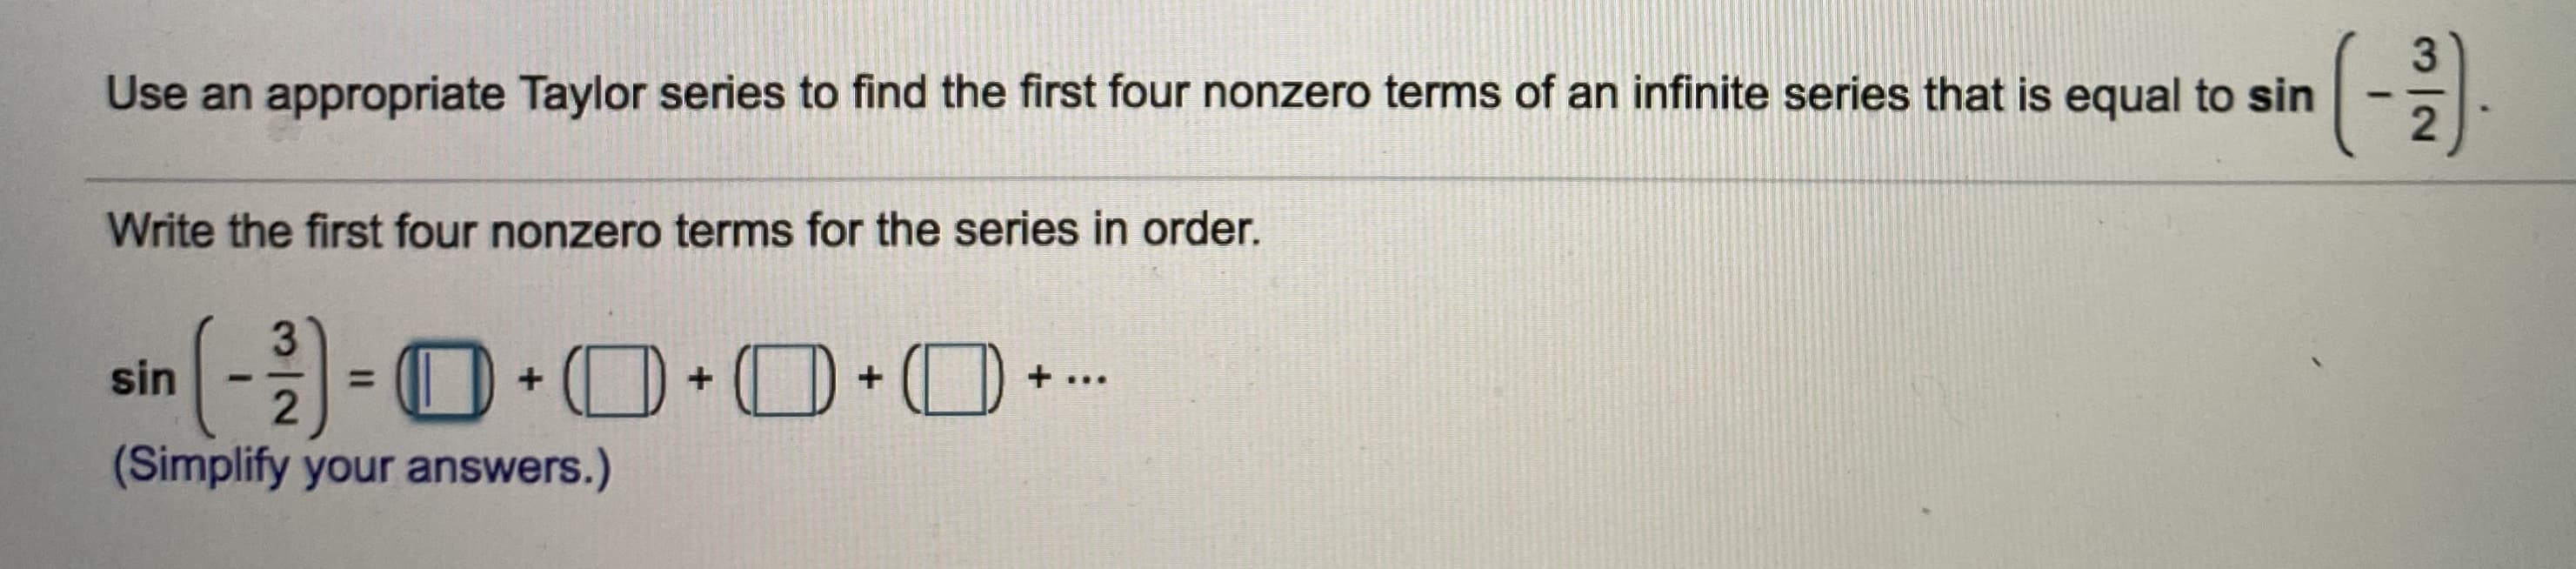 (-를
Use an appropriate Taylor series to find the first four nonzero terms of an infinite series that is equal to sin
Write the first four nonzero terms for the series in order.
sin
%3D
2
+ .
...
